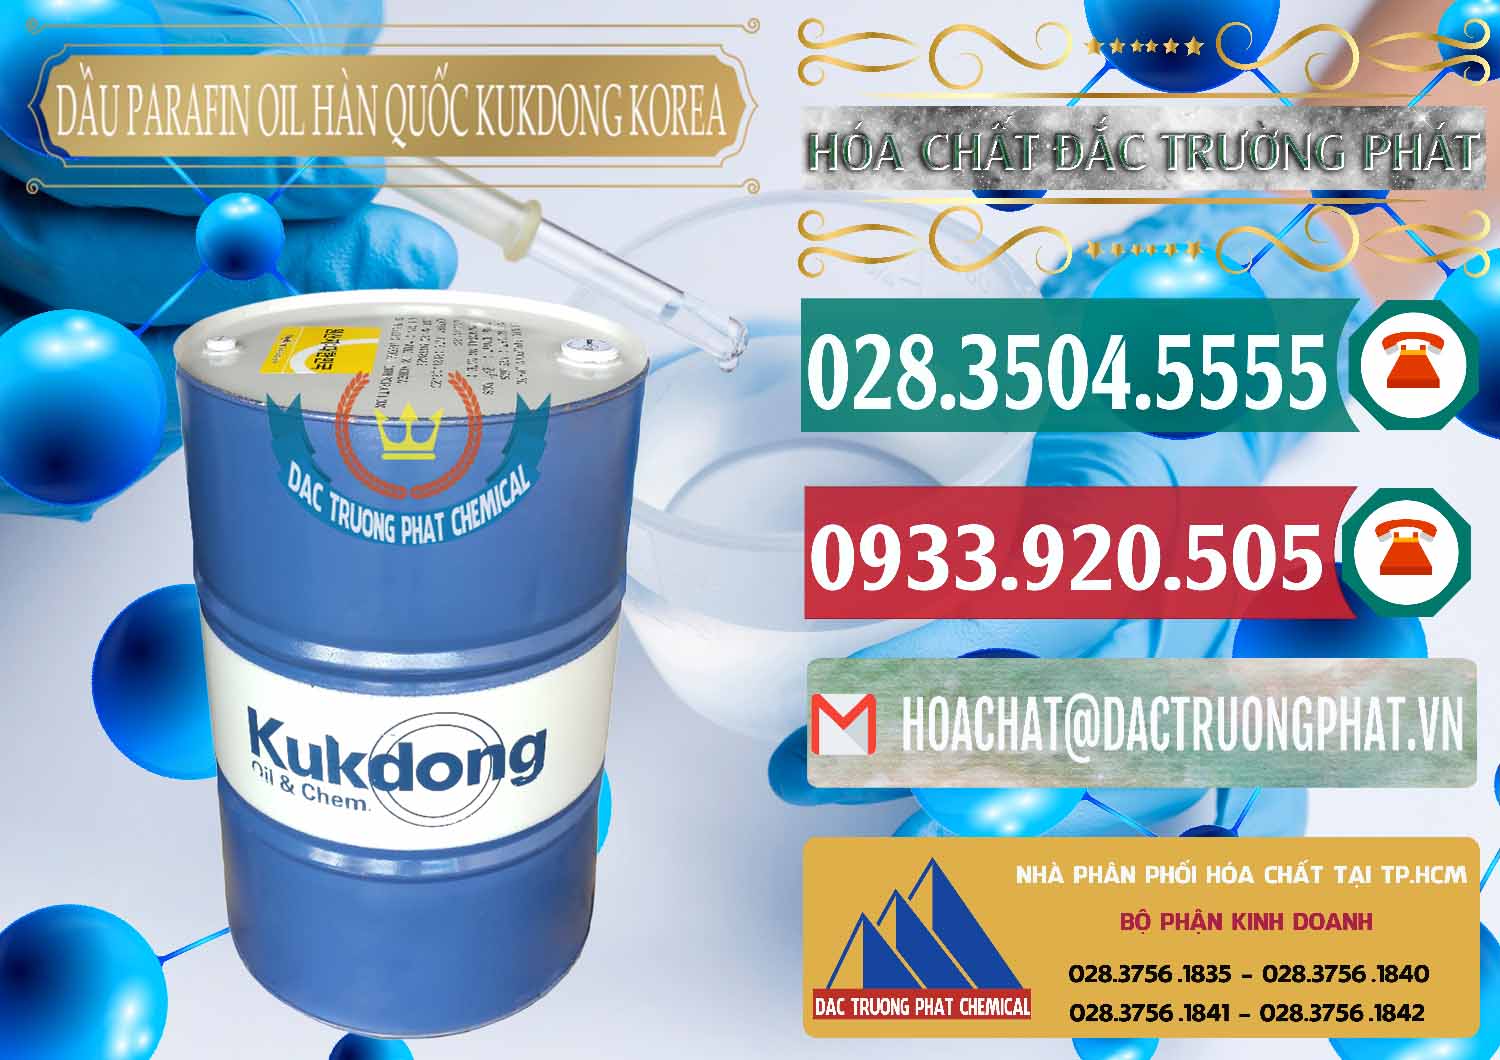 Đơn vị chuyên bán & cung cấp Dầu Parafin Oil Hàn Quốc Korea Kukdong - 0060 - Công ty bán và cung cấp hóa chất tại TP.HCM - muabanhoachat.vn